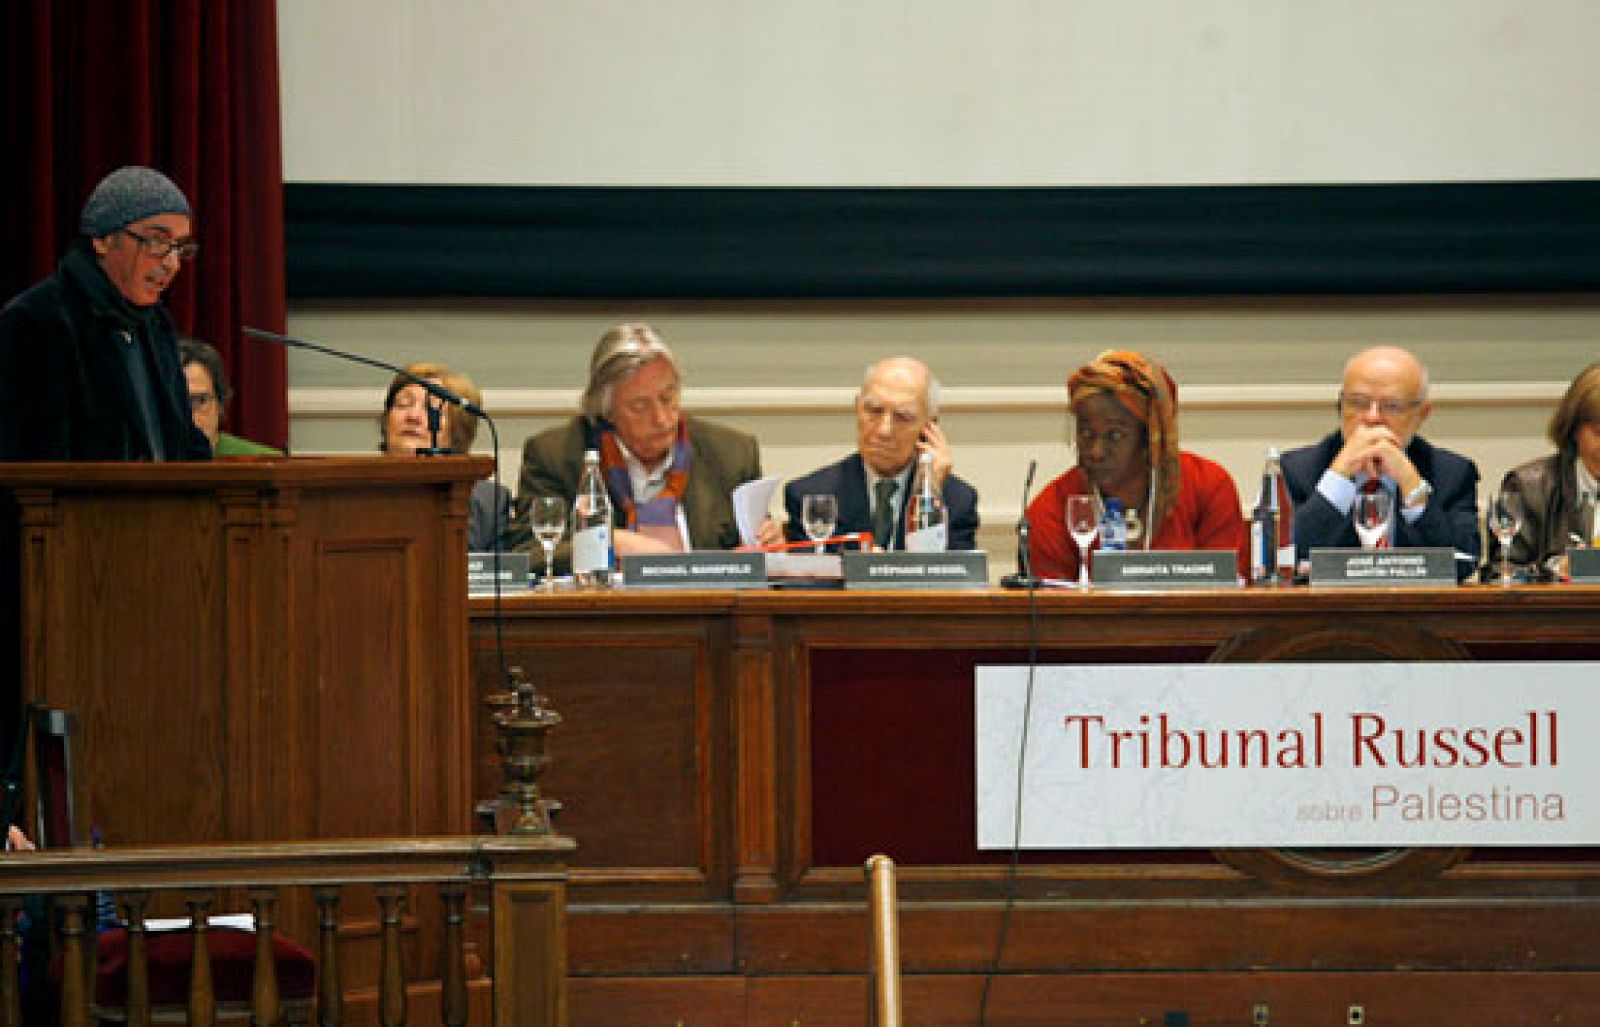 Comienza en Barcelona la primera sesión del Tribunal Russell sobre Palestina